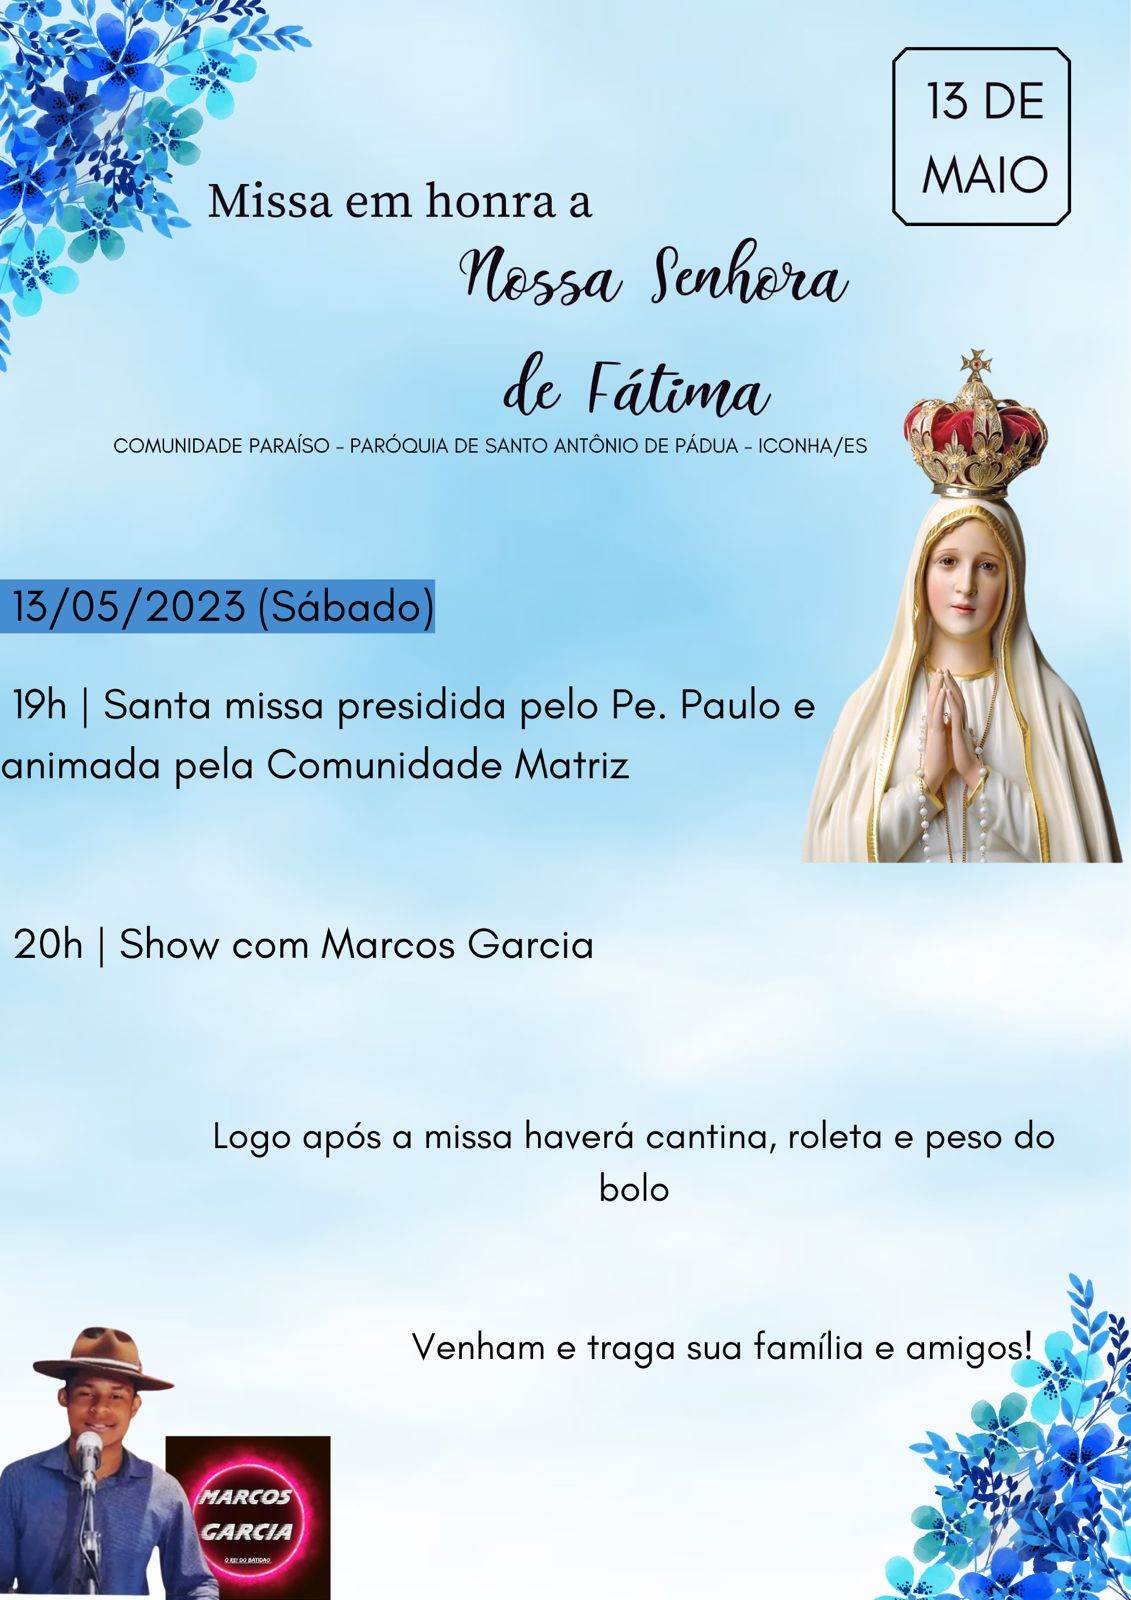 Bairro Paraiso em Iconha Celebra Nossa Senhora de Fatima no Próximo sábado